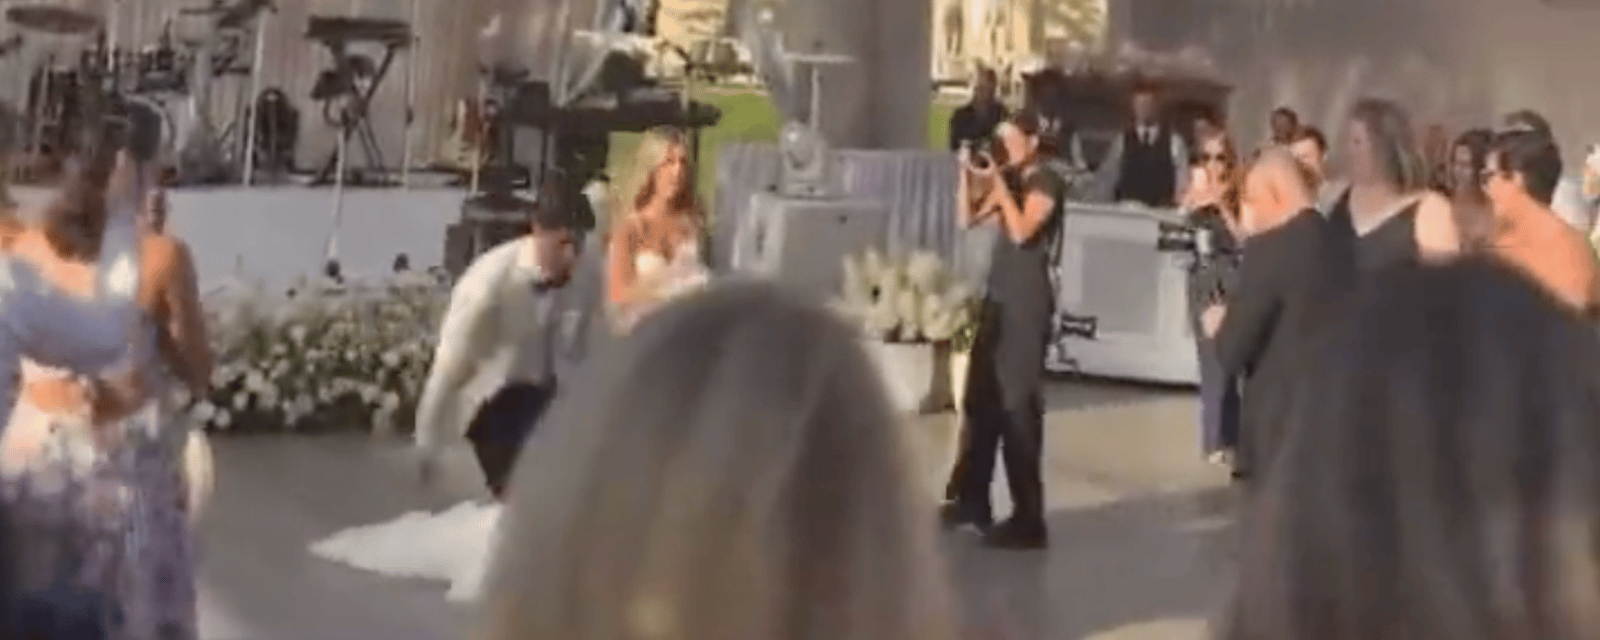 Wild Mitch Marner wedding video has gone viral 